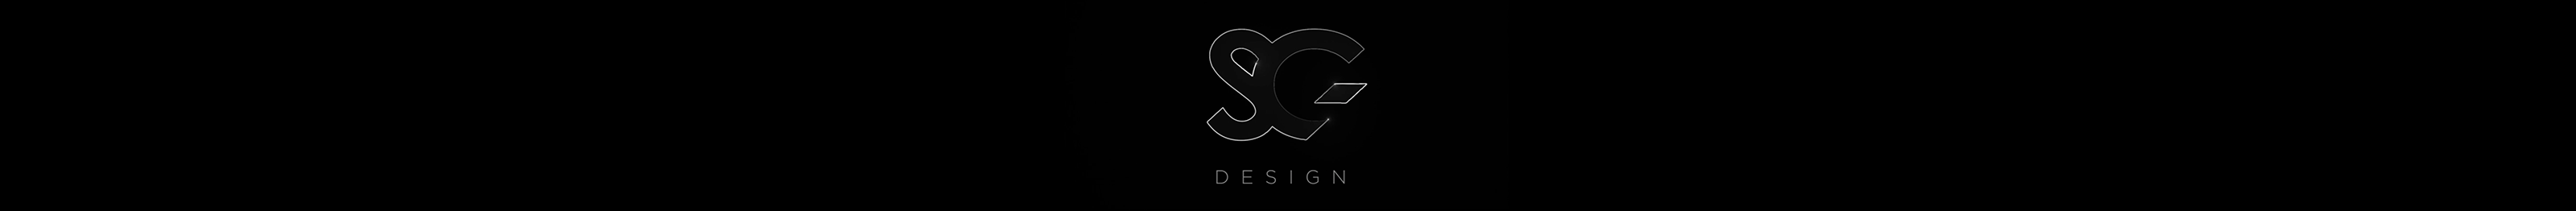 SG DESIGN's profile banner